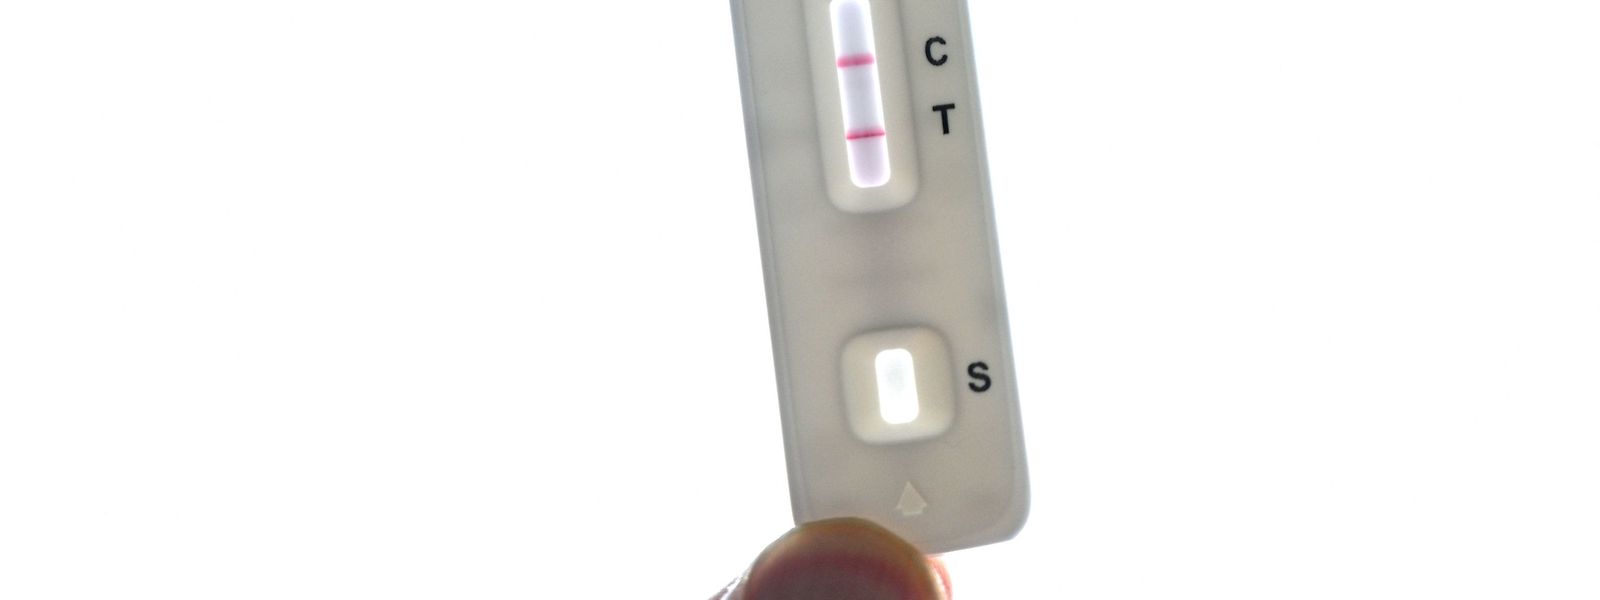 Beim zweiten Strich wird's ernst: Wenn der Covid-Schnelltest "C" und "T" anzeigt, muss der PCR-Test zur Bestätigung her. 